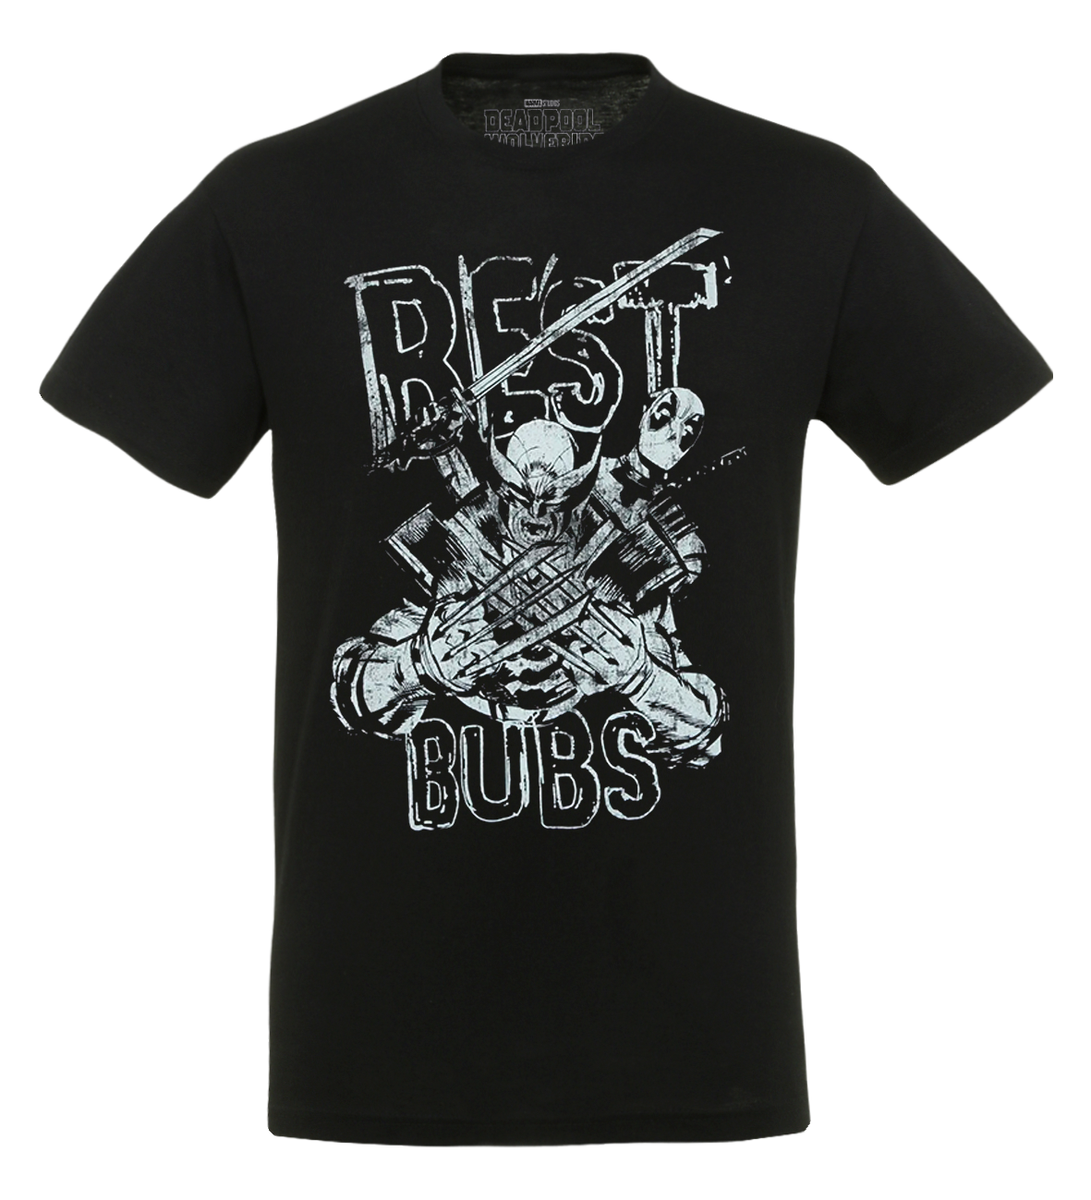 Deadpool - Best Bubs - T-Shirt